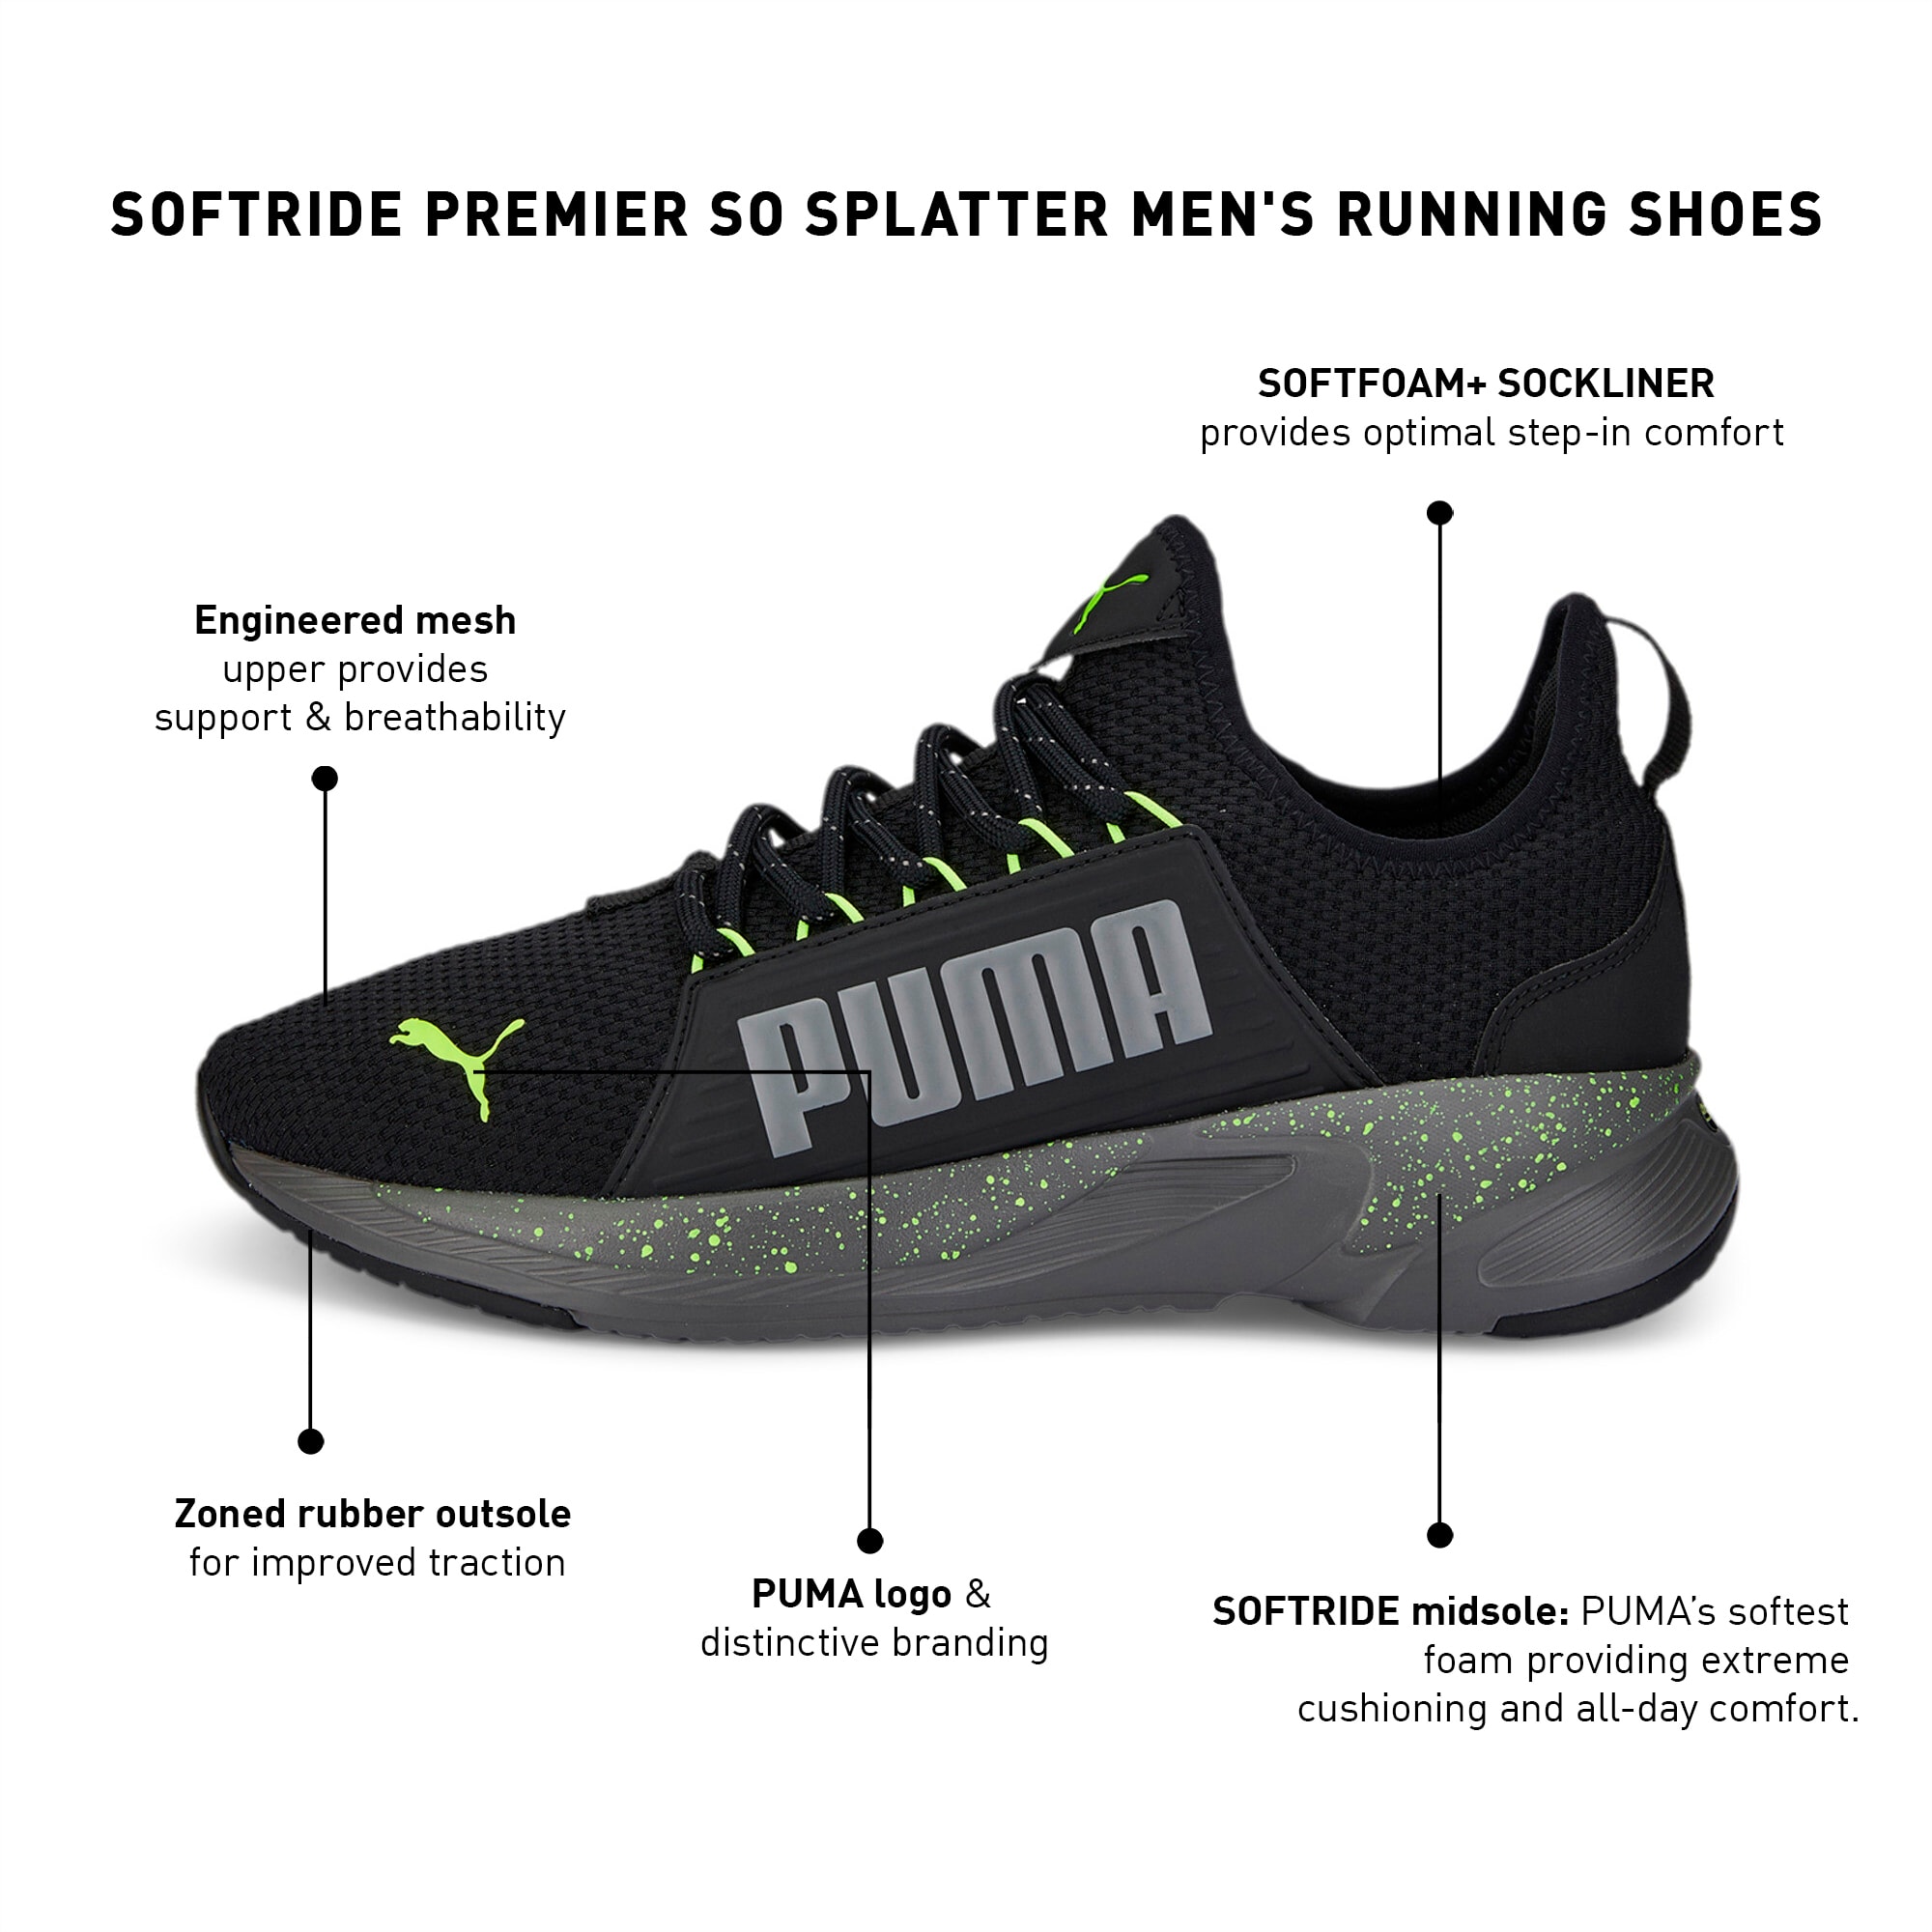 SOFTRIDE Premier So Splatter Men's Running Shoes